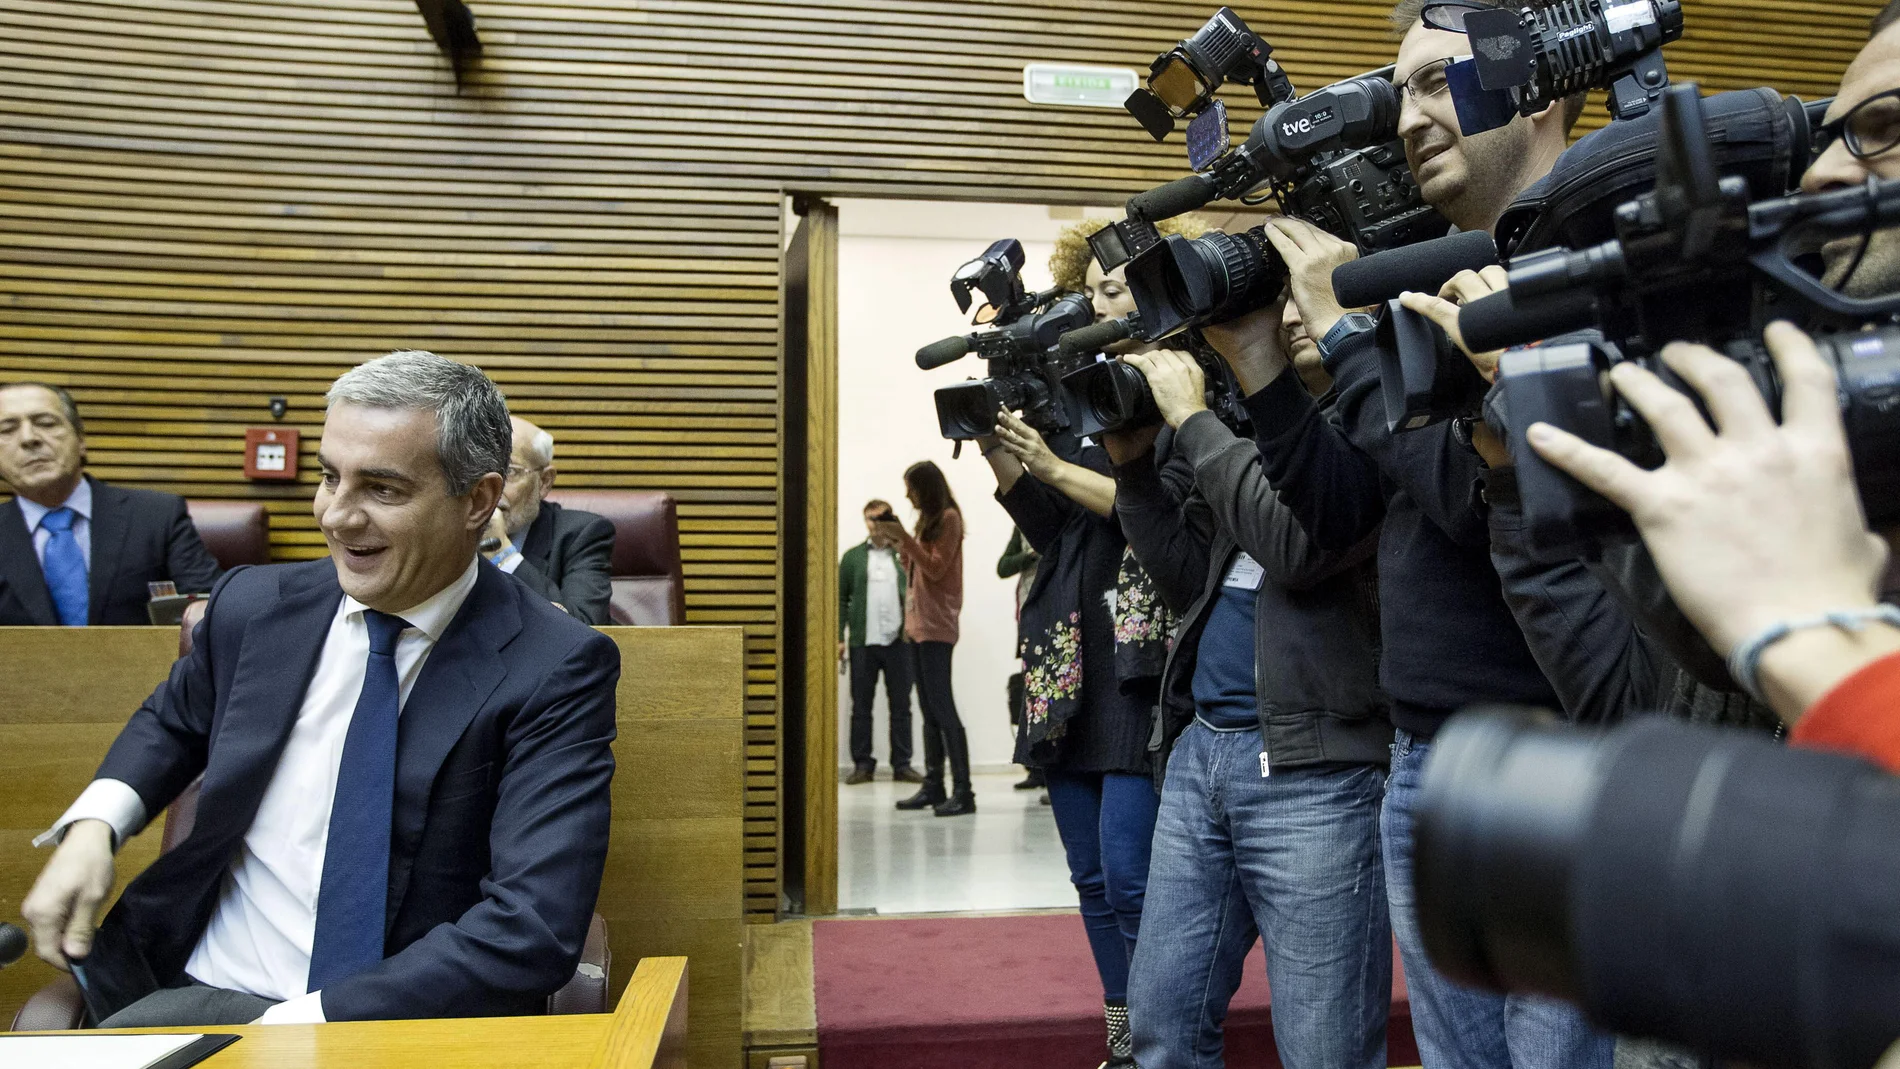 Ricardo Costa rodeado de cámaras.